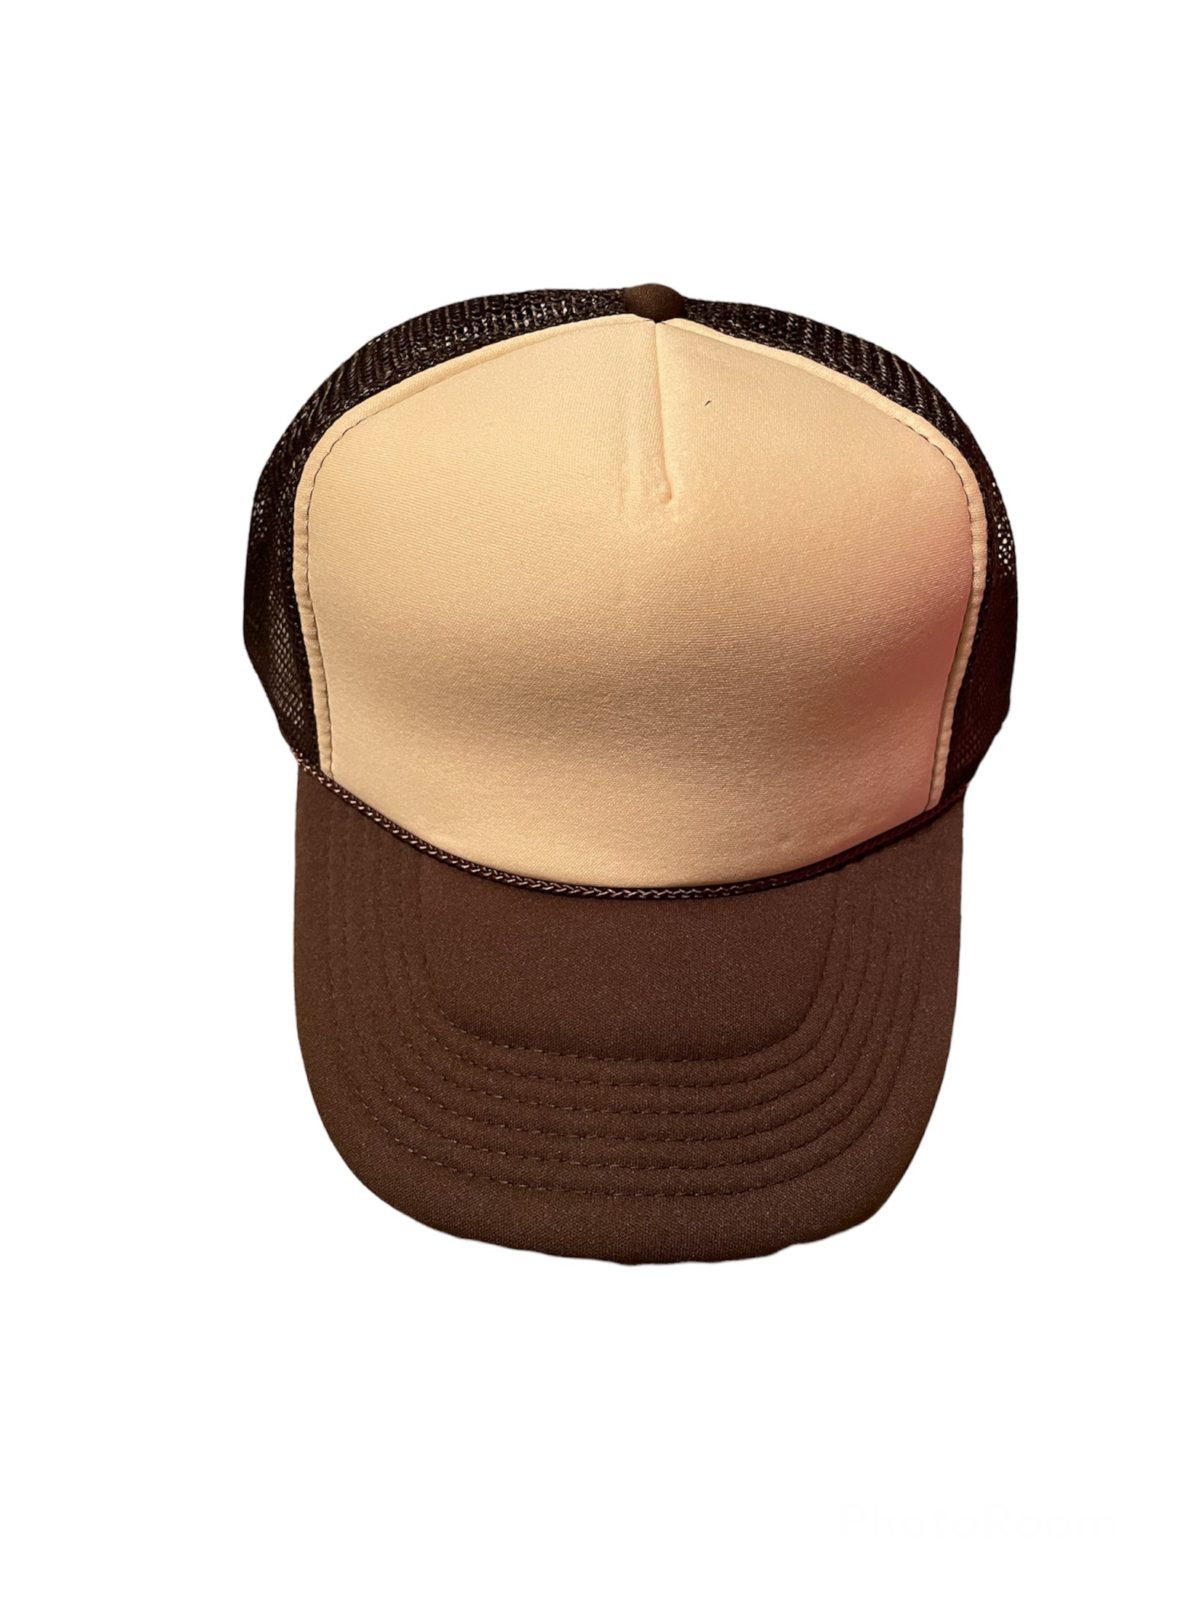 Two Tone Trucker Hats - Orange Blank Trucker Cap – Bewild